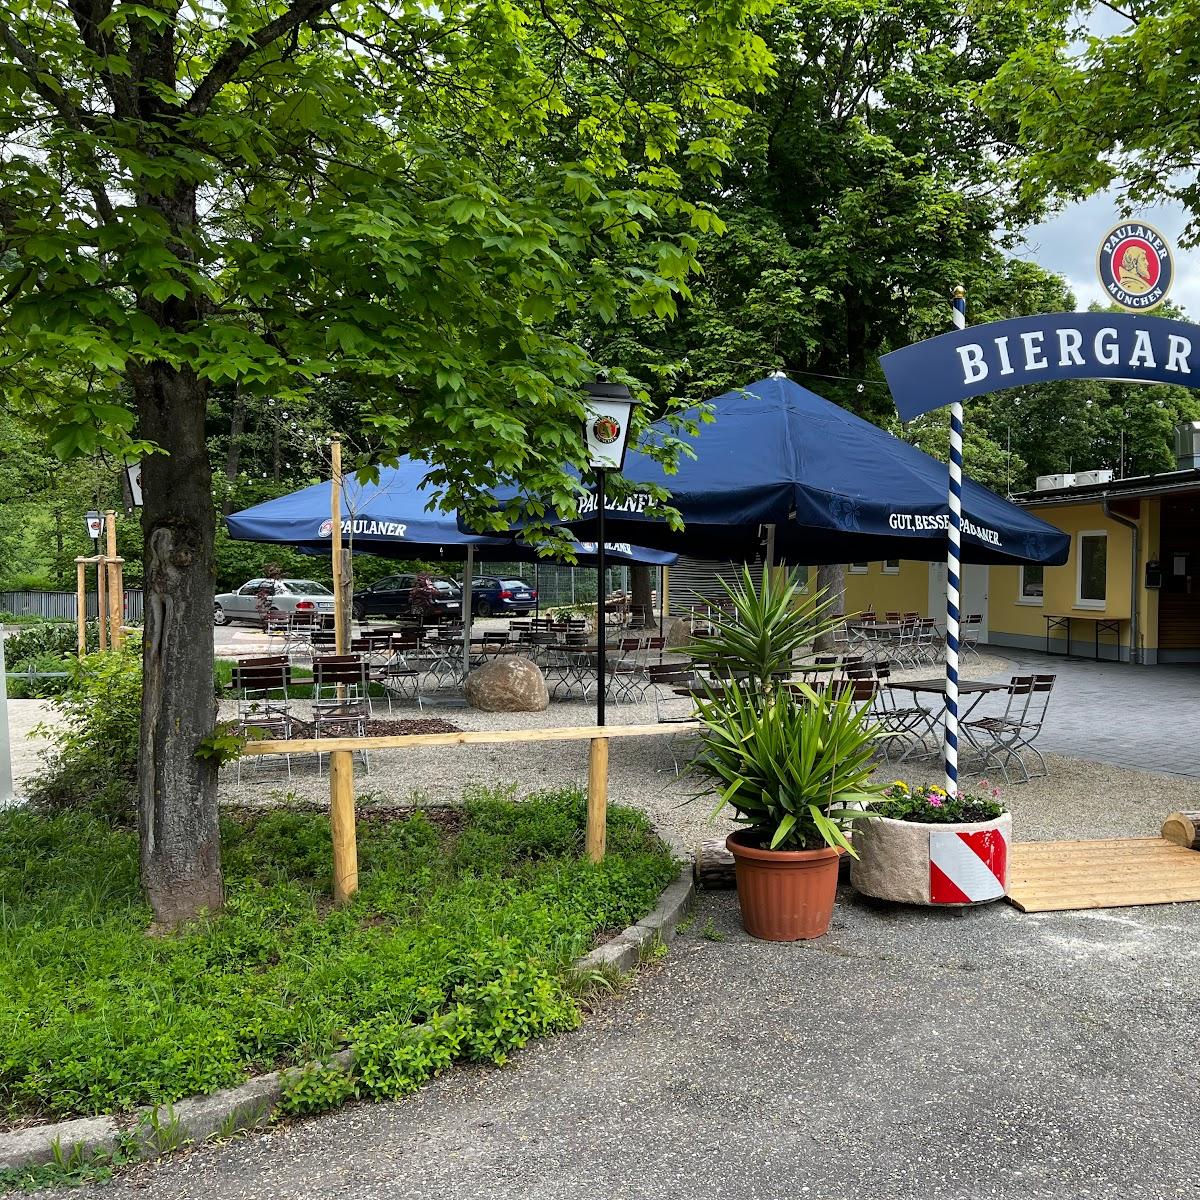 Restaurant "Biergarten am Michelbach" in Obersulm